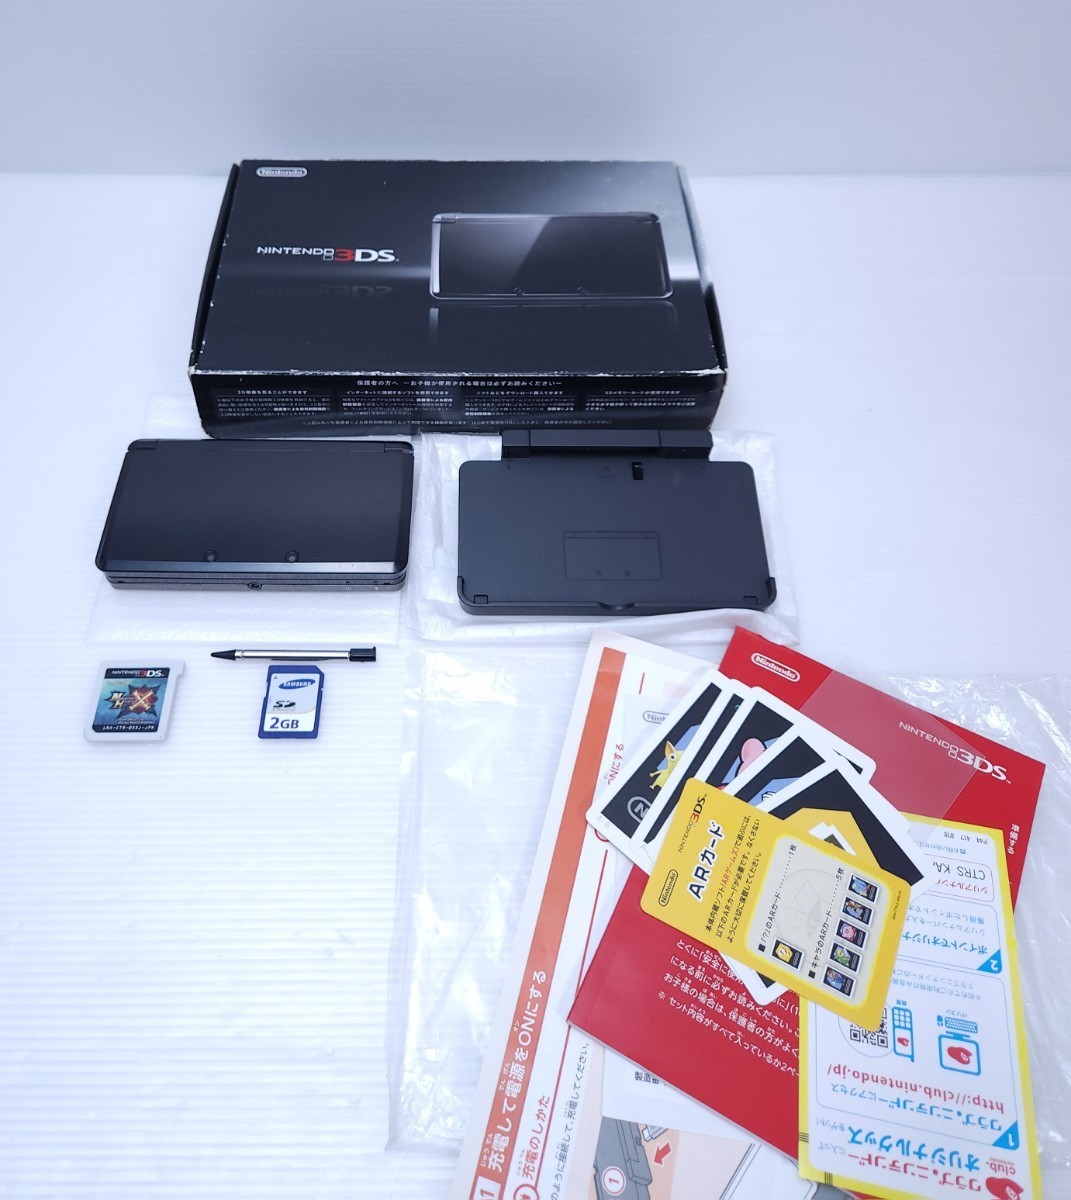 魅力的な価格 2GB メモリカード 付属品完備 CTR-001 本体 コスモブラック ニンテンドー3DS Nintendo + 美品/動作品(1) 希少 ゲームソフト ニンテンドー3DS本体